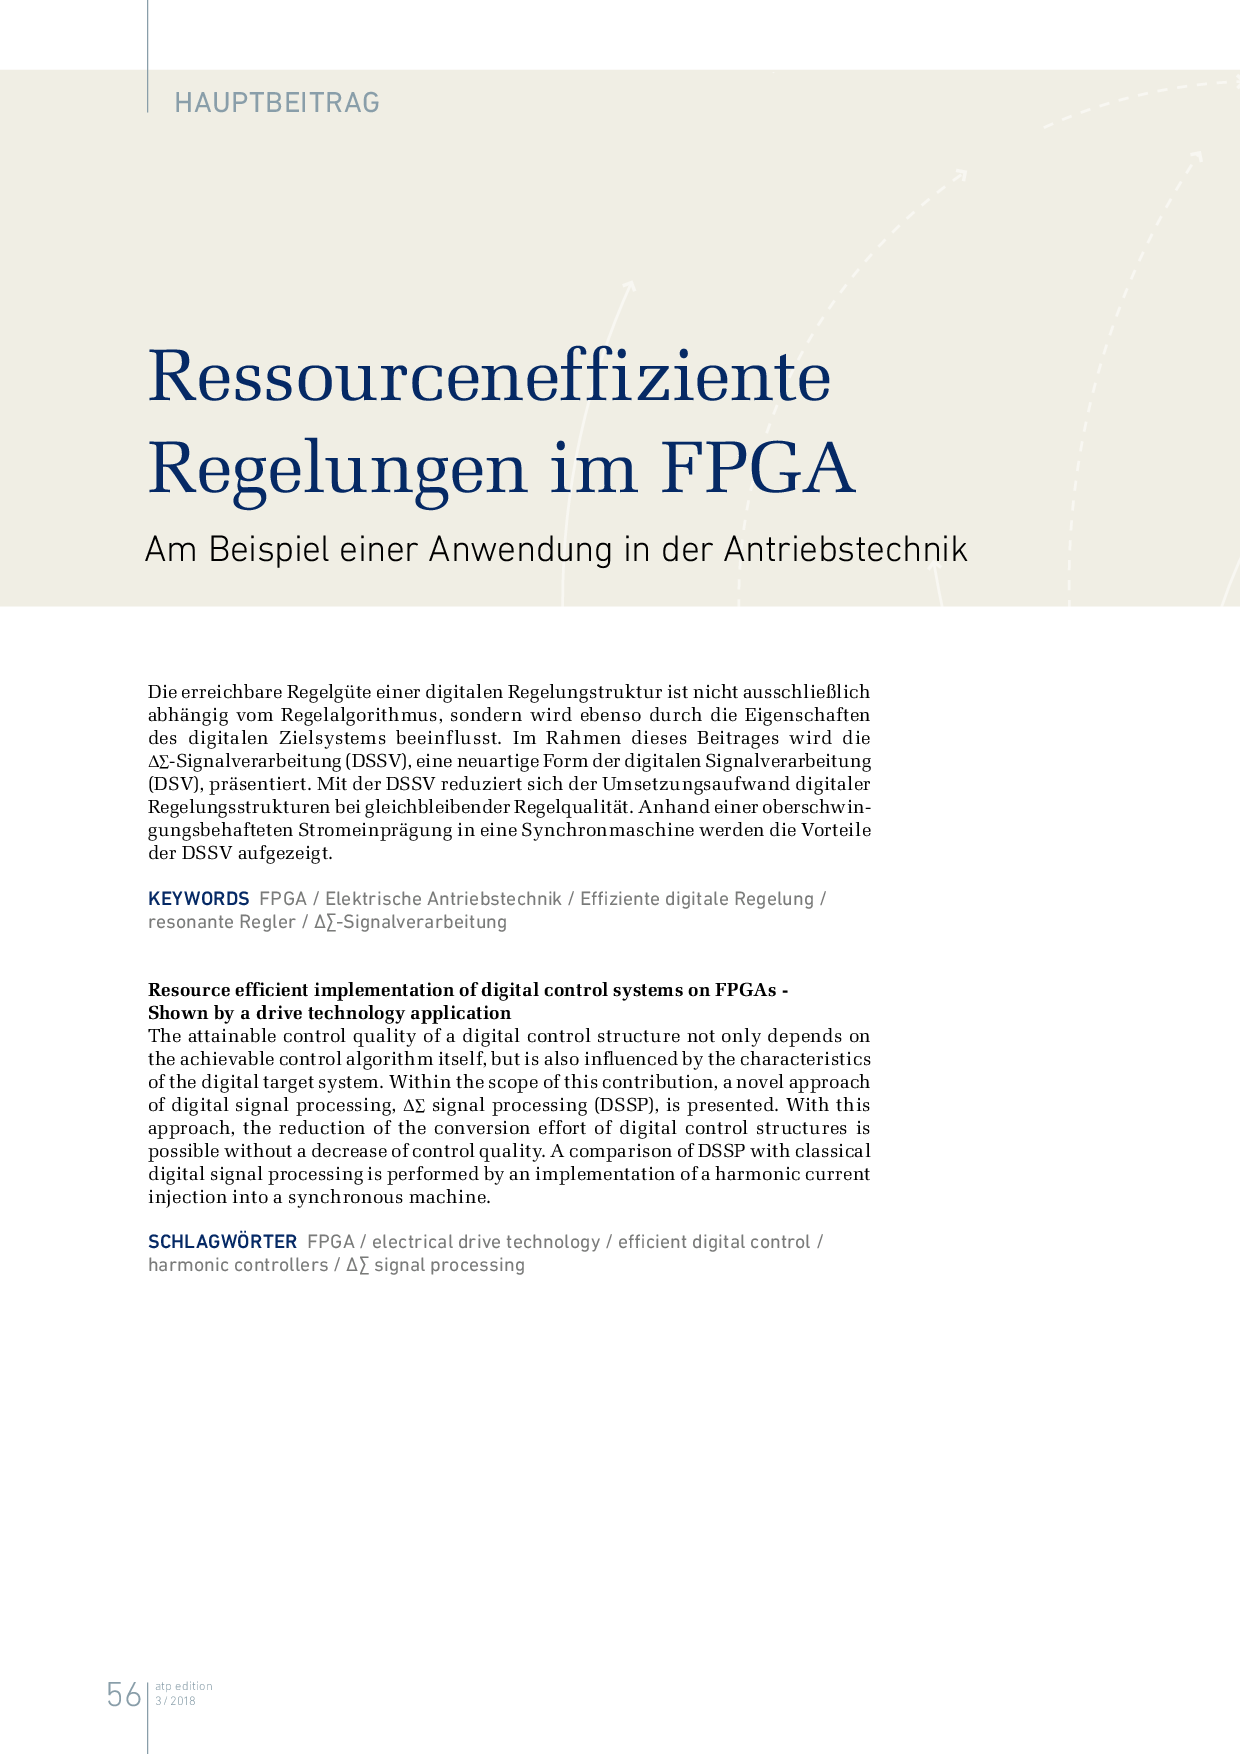 Ressourceneffiziente Regelungen im FPGA